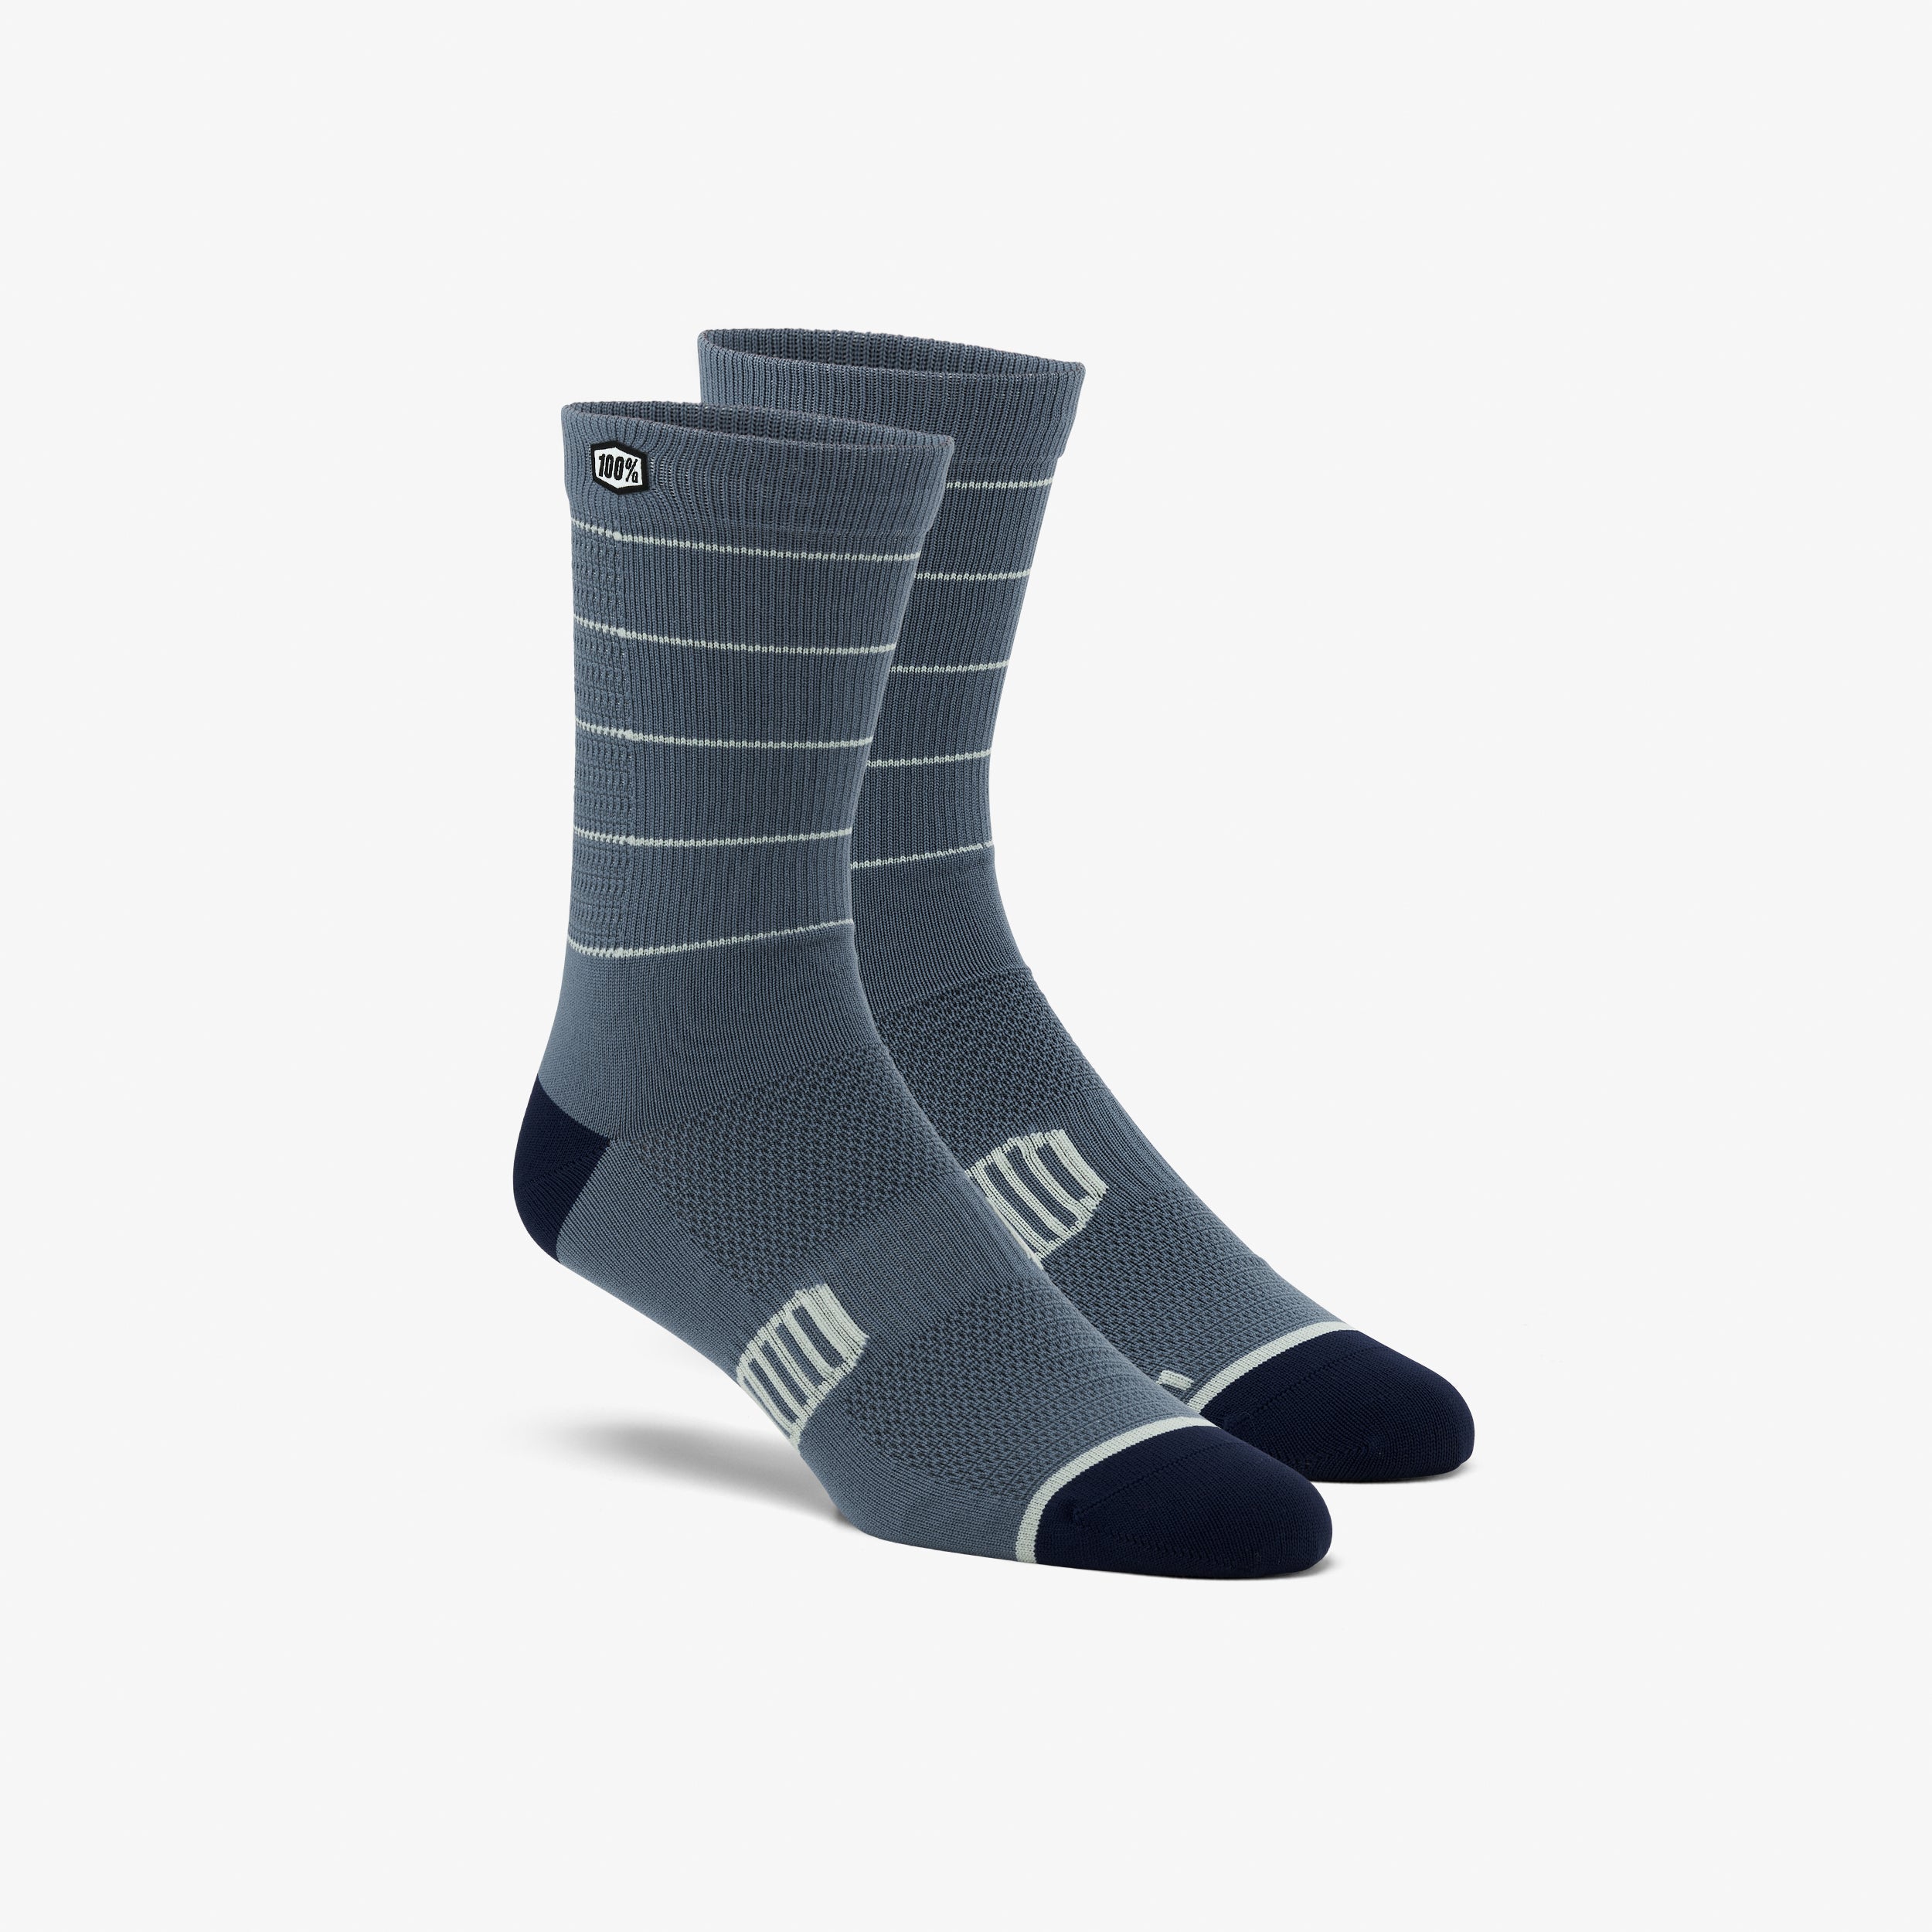 ADVOCATE Performance MTB Socks Slate/Navy